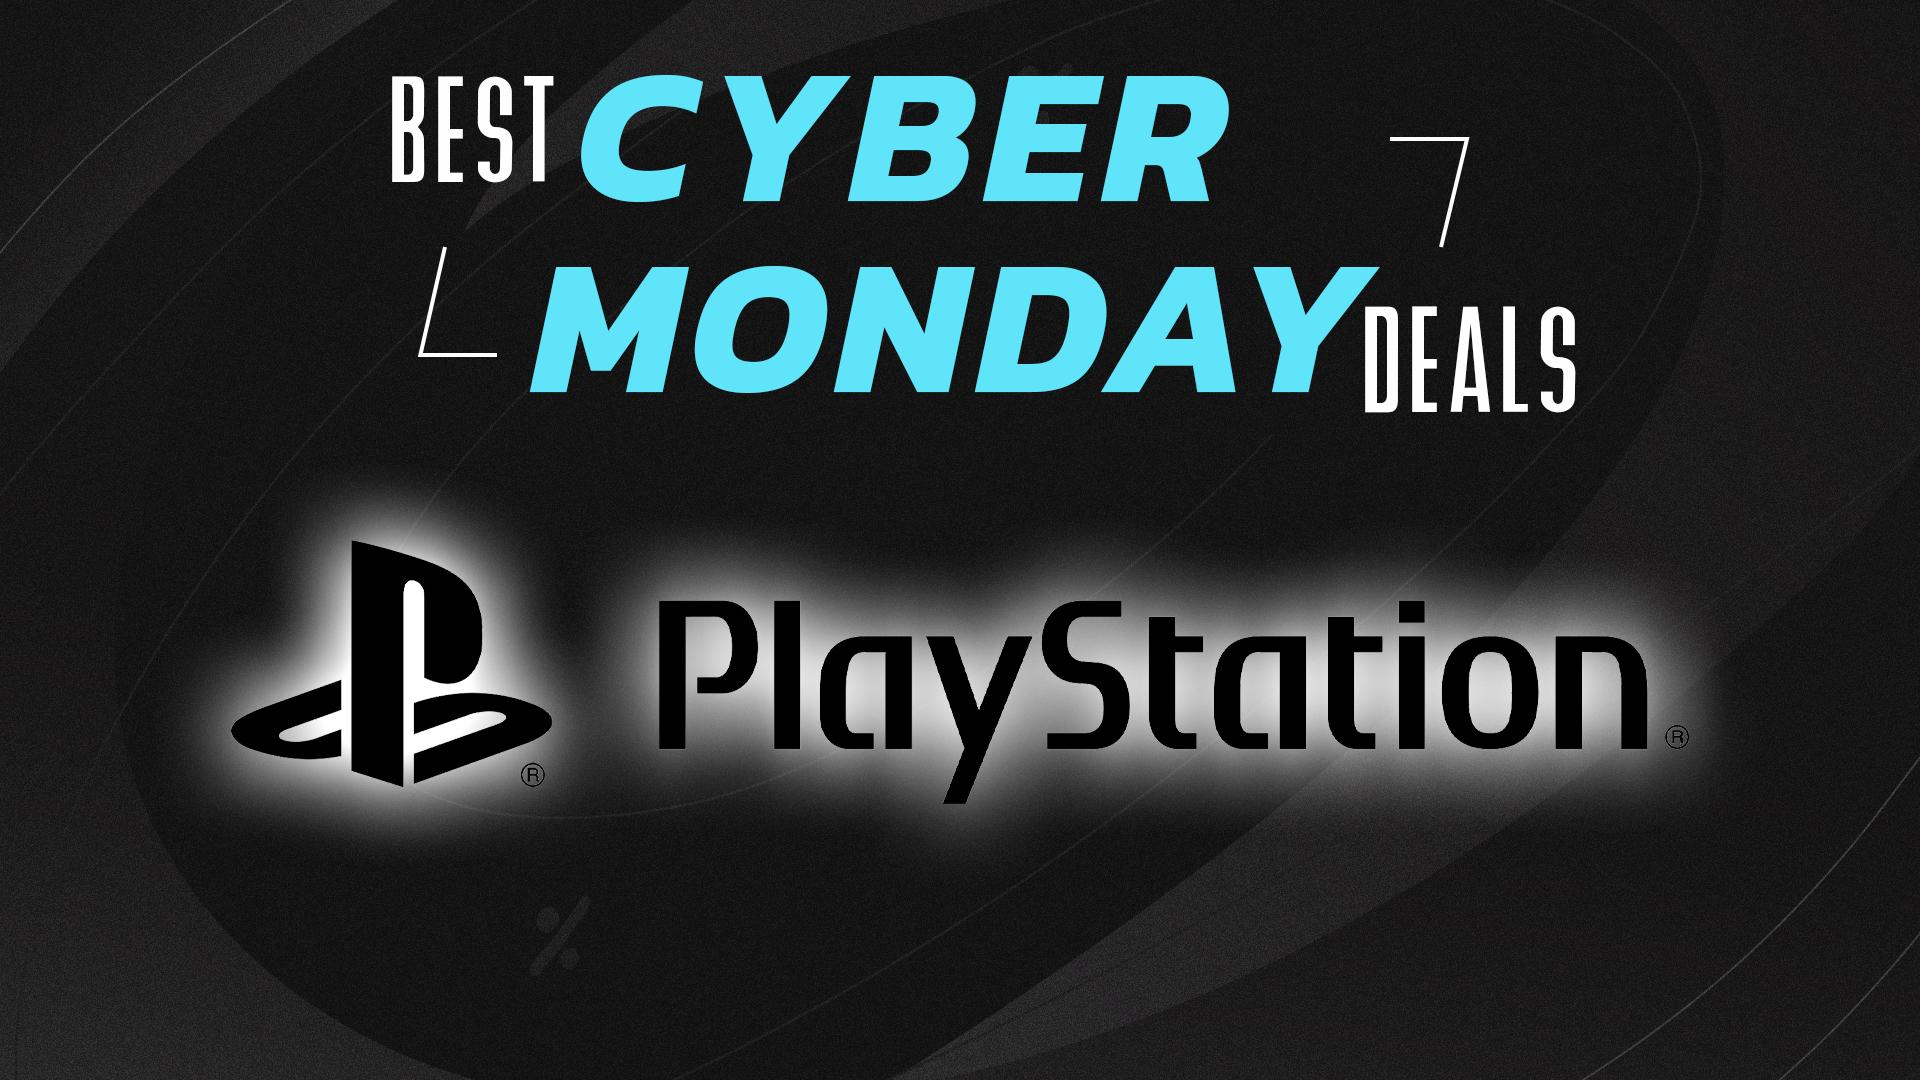 Black Friday PlayStation deals 2023